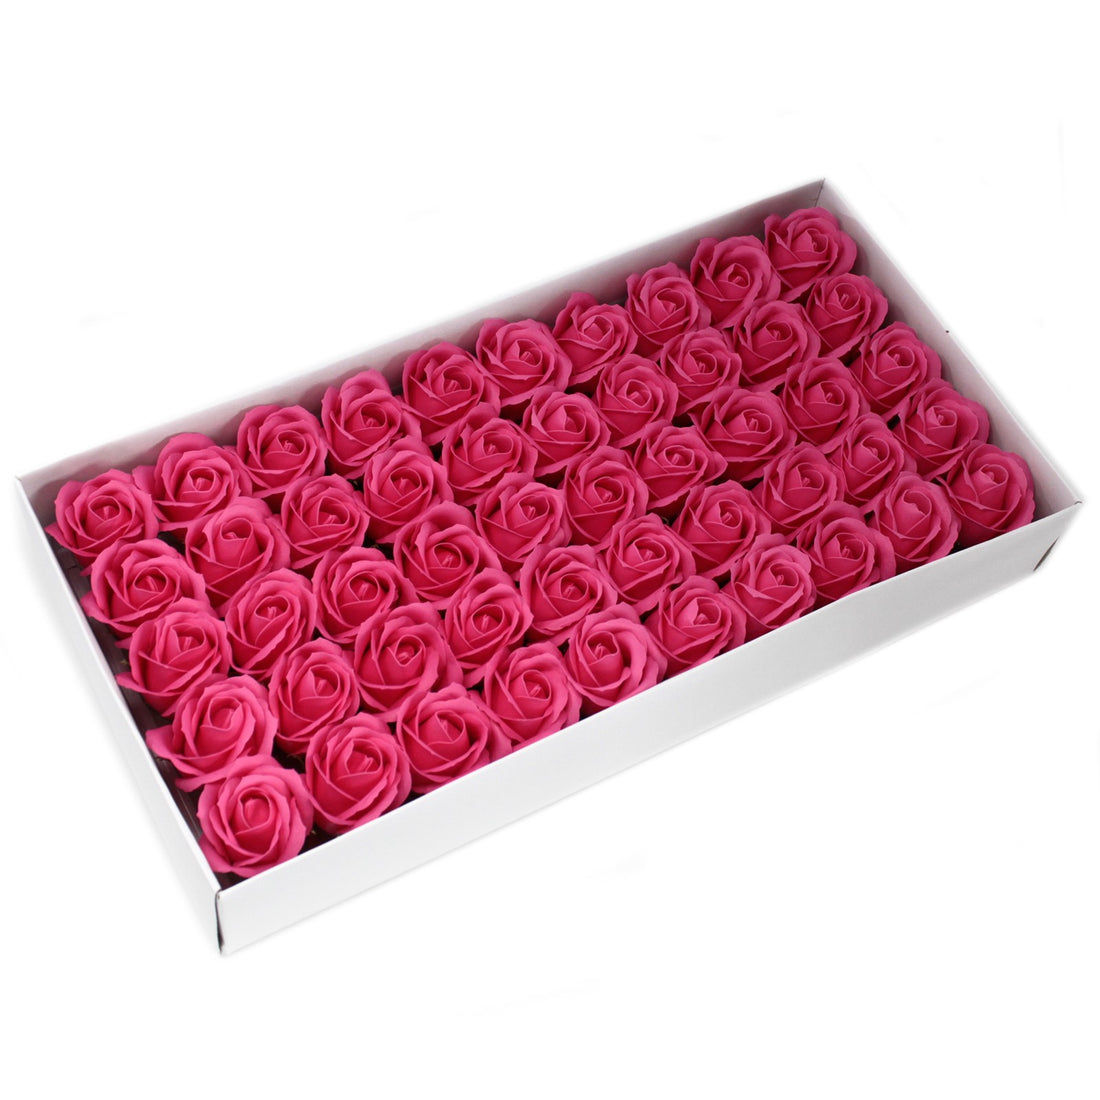 Craft Soap Flowers - Med Rose - Rose x 10 pcs